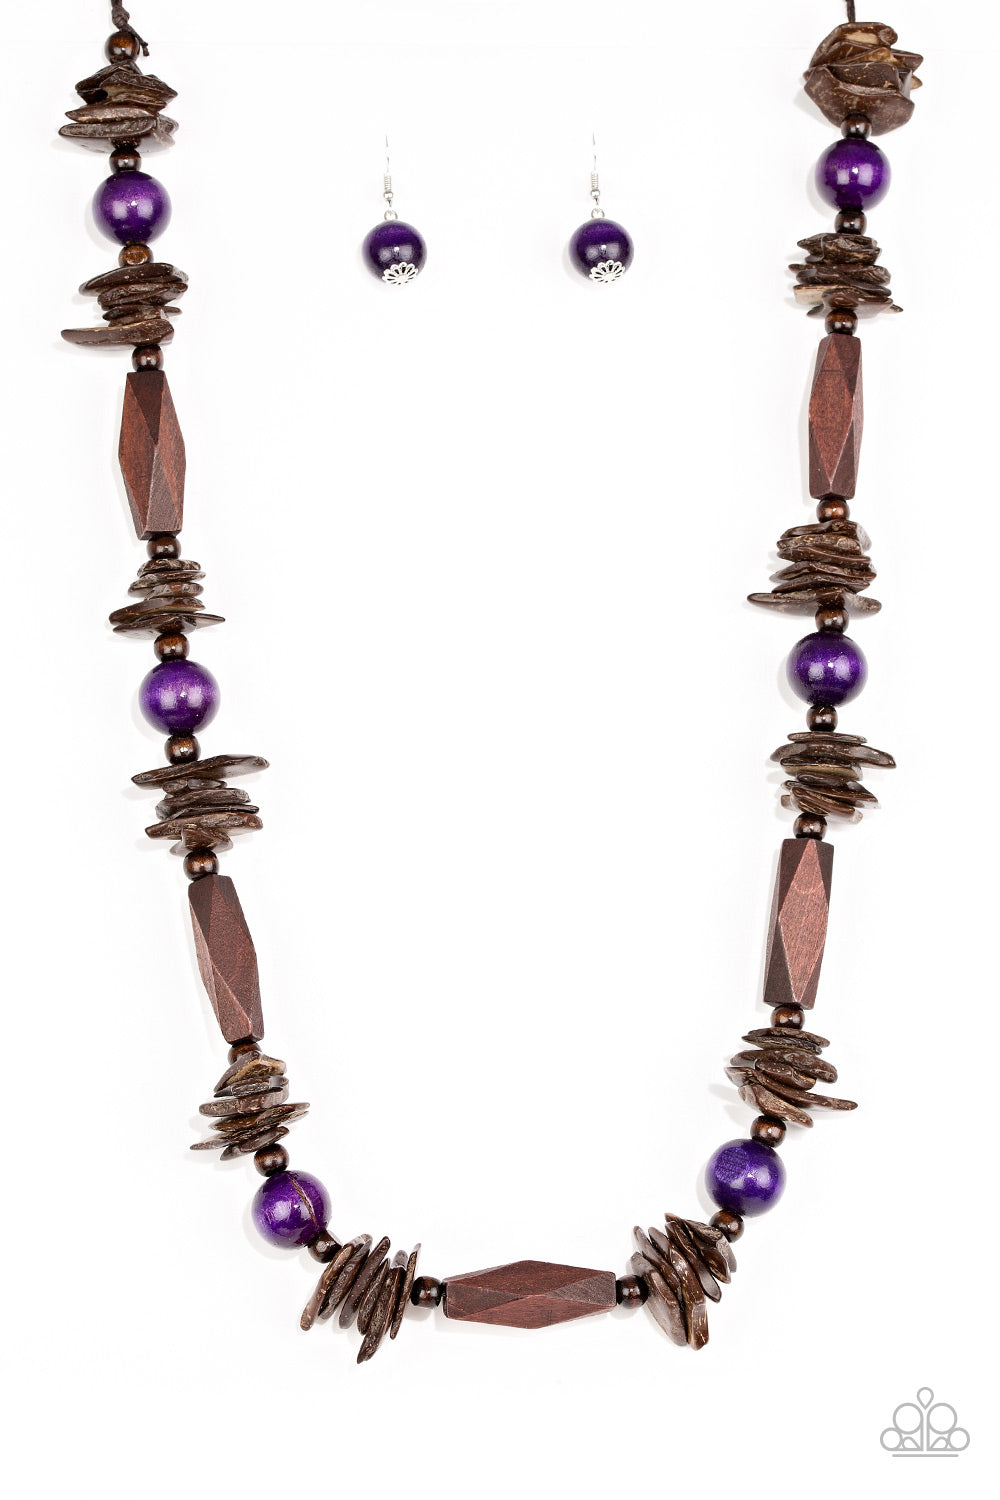 Paparazzi Cozumel Coast - Purple Necklace